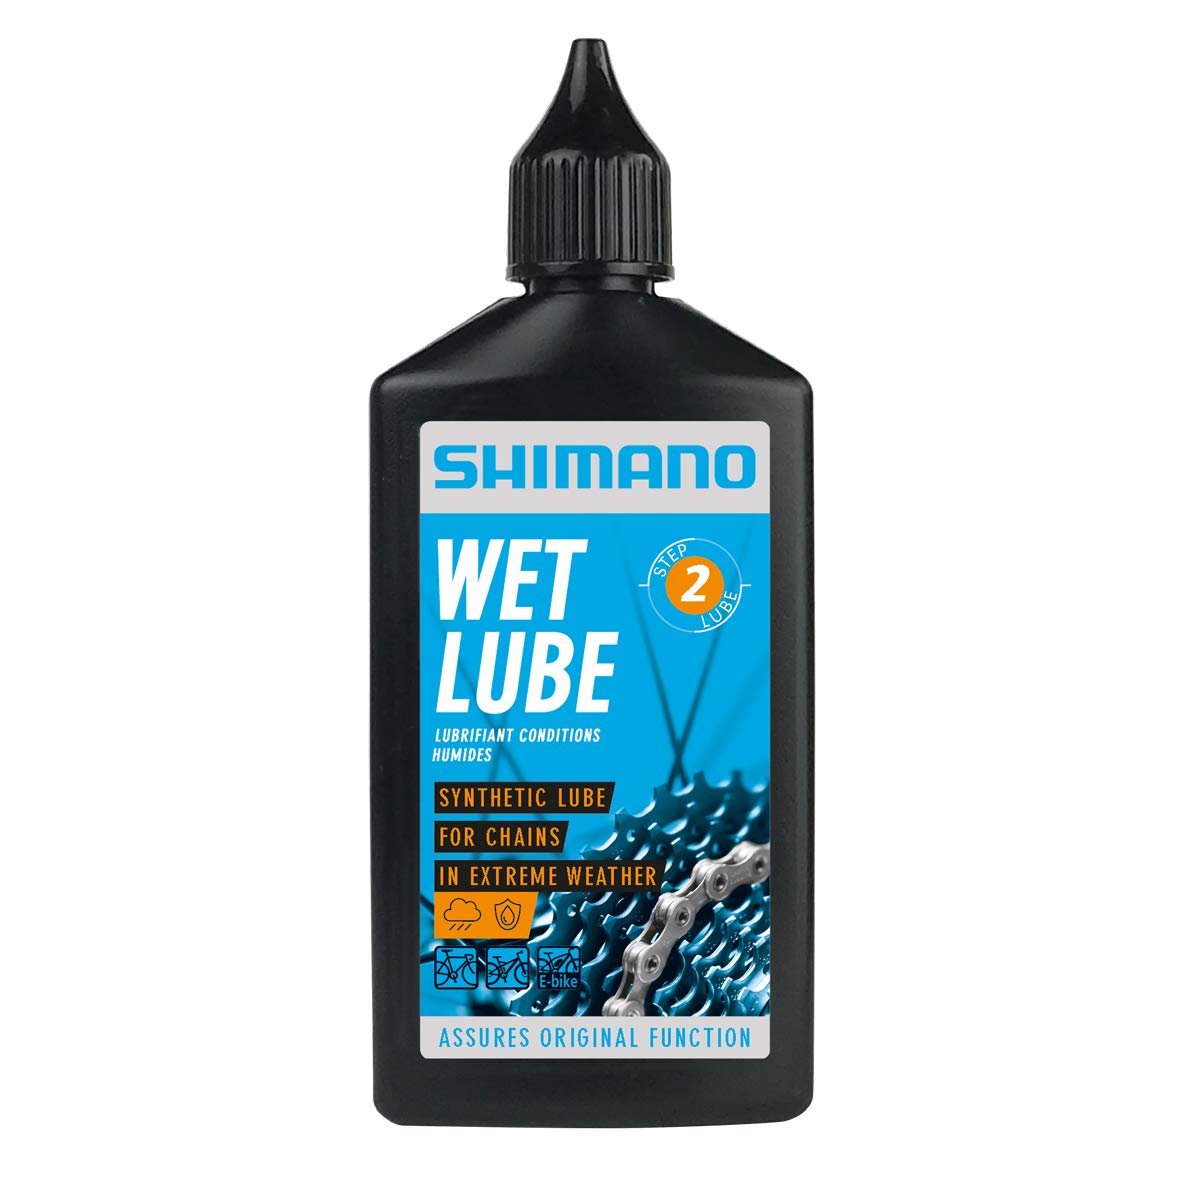 Смазка Shimano Wet Lube, для цепи, для влажной погоды, флакон, 100 мл, LBWL1B0100SA смазка shimano wet lube для цепи для влажной погоды флакон 100 мл lbwl1b0100sa